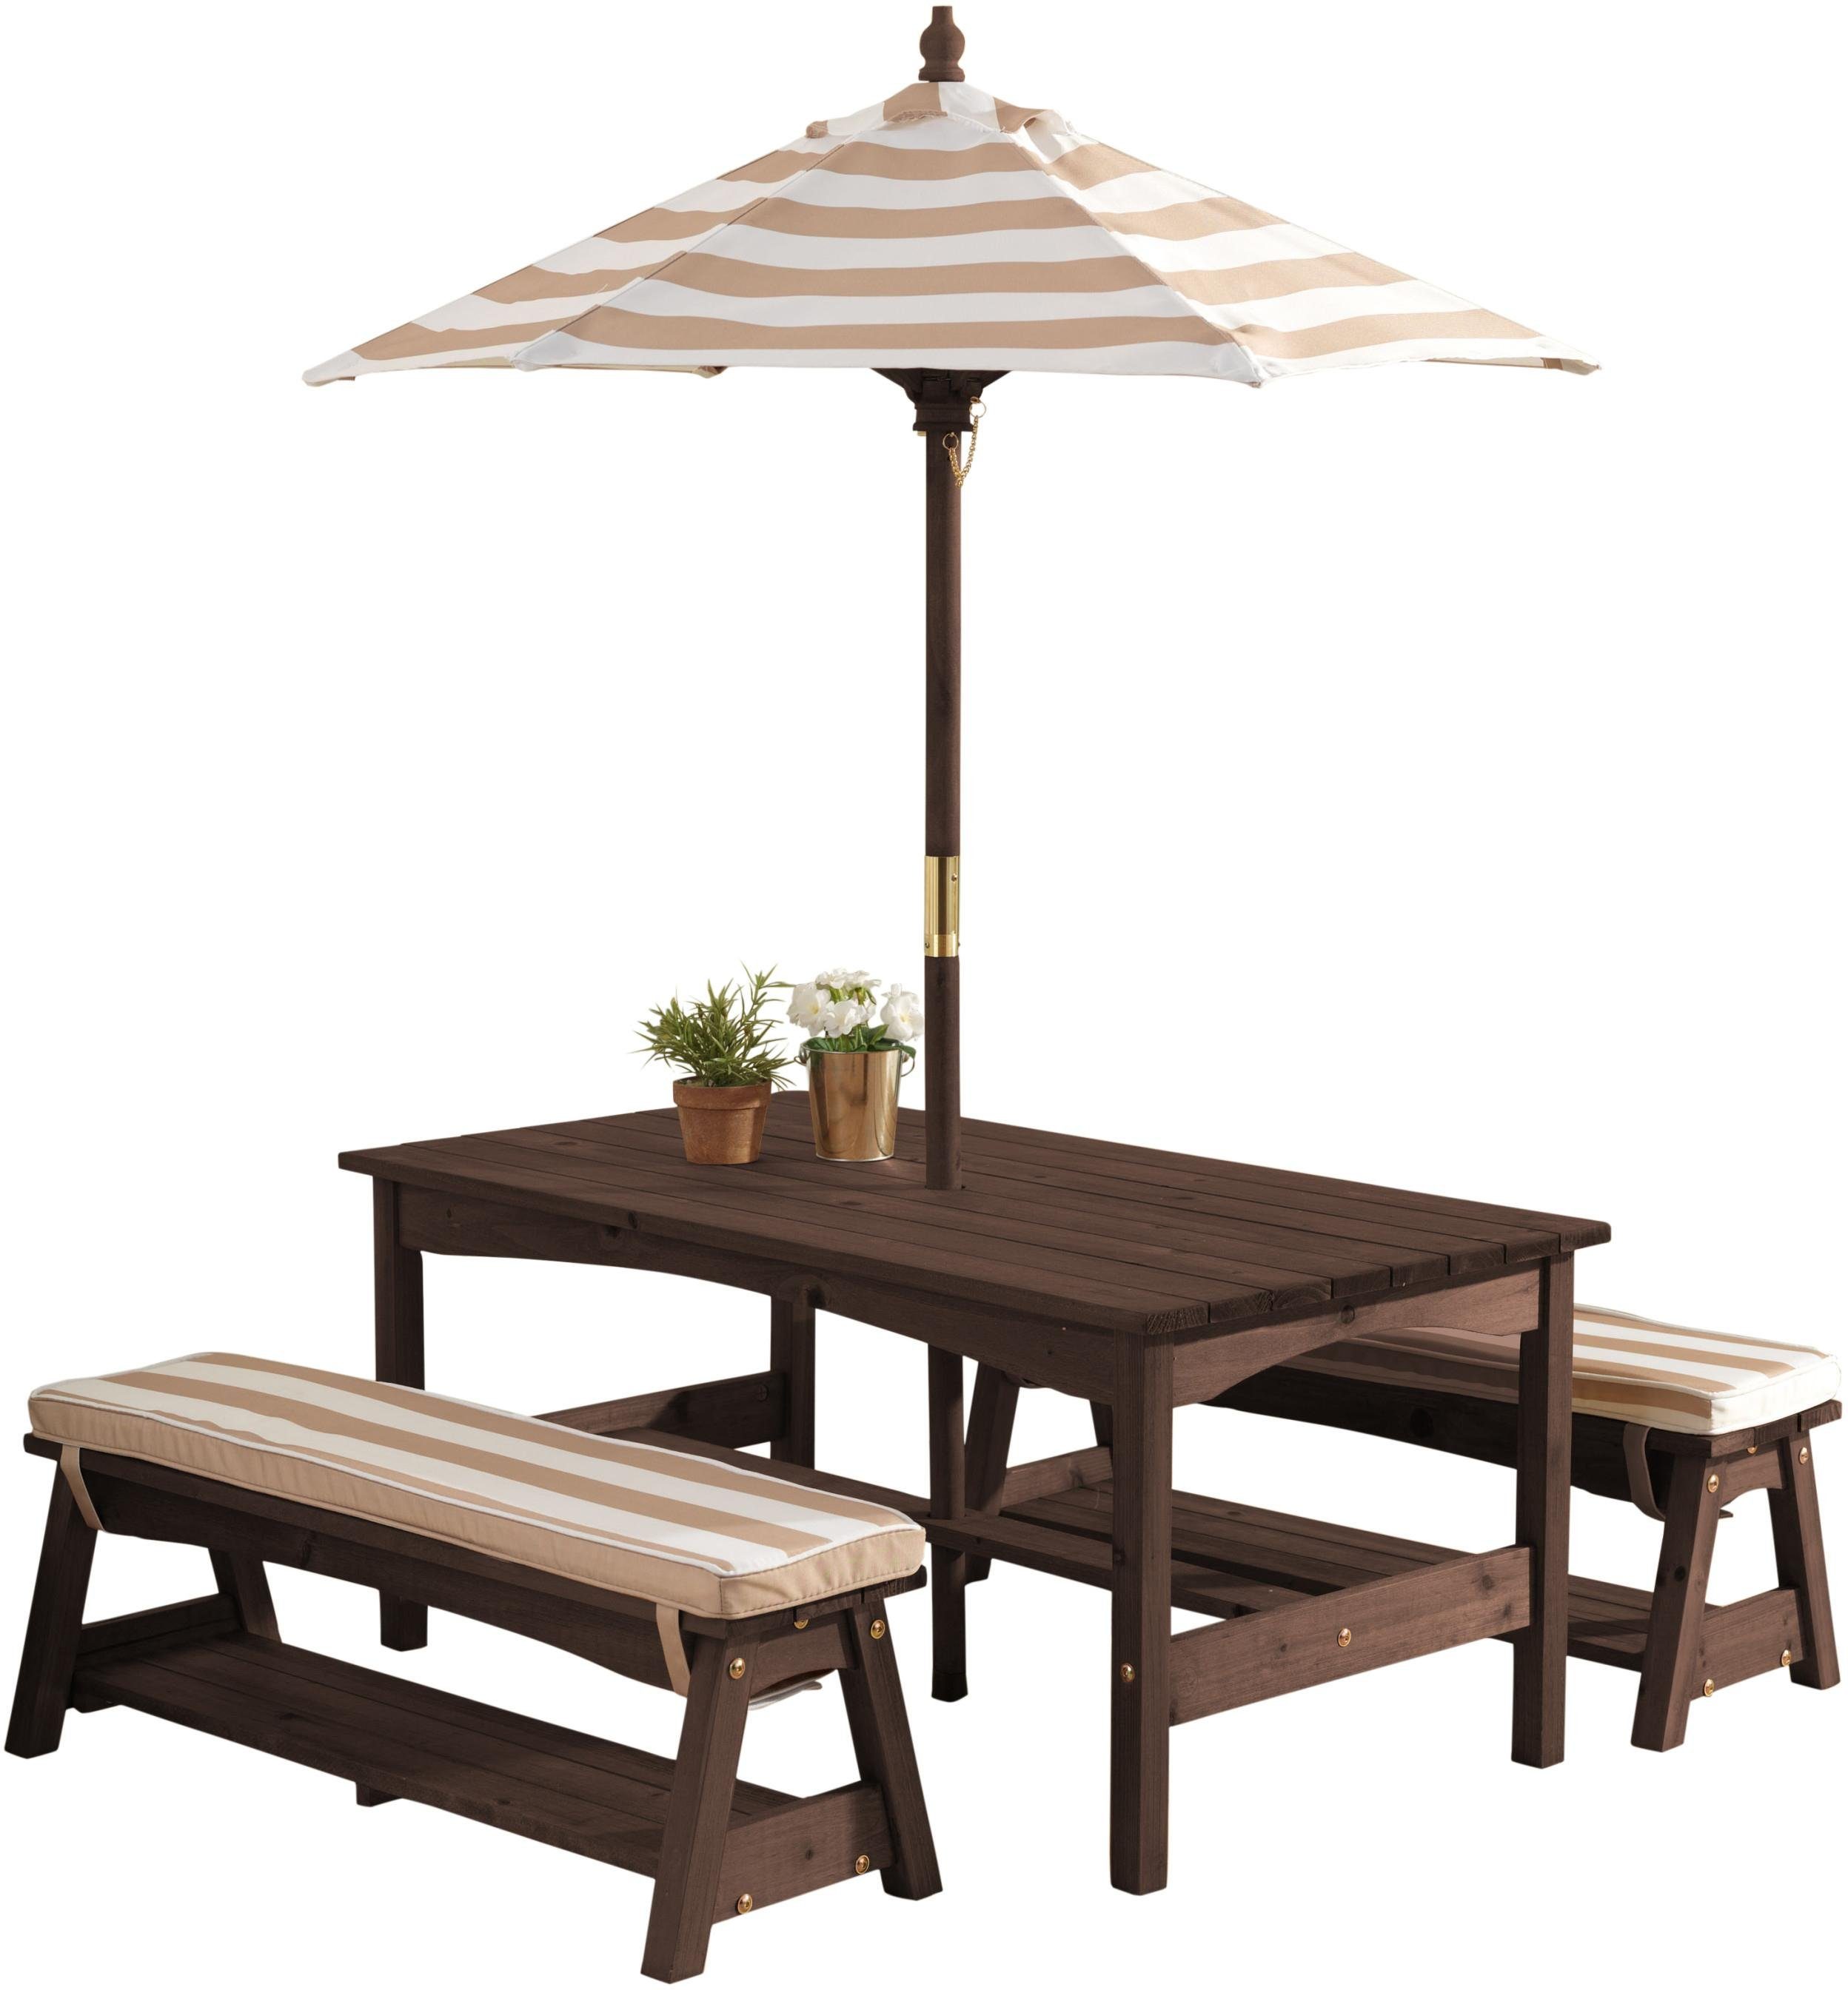 KidKraft® Kindersitzgruppe »Gartentischset dunkelbraun«, mit Sitzauflagen  und Sonnenschirm, beige-weiß gestreift online kaufen | OTTO